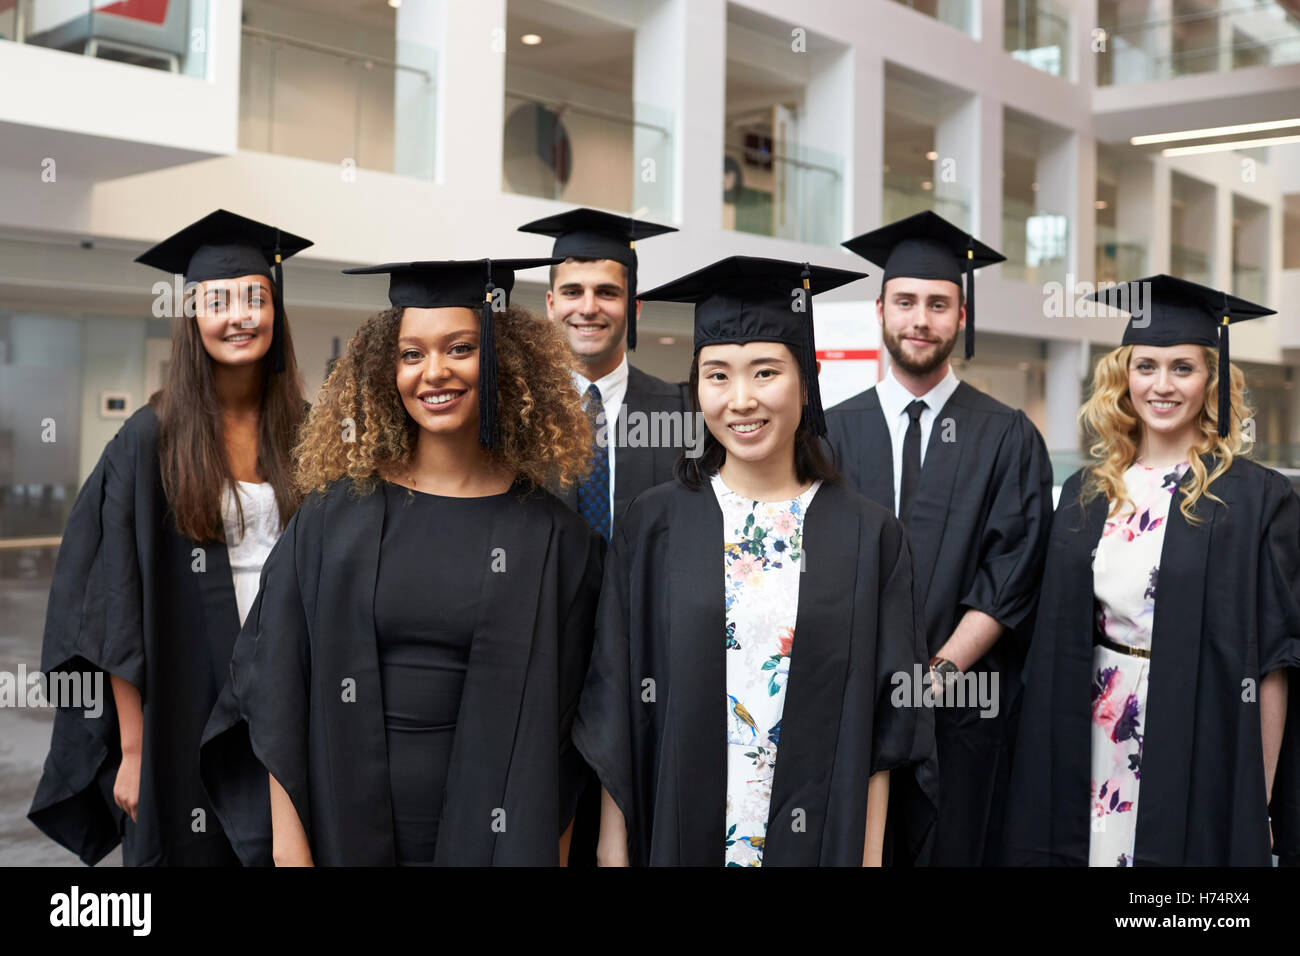 Retrato de grupo de graduados universitarios en toga y birrete Foto de stock